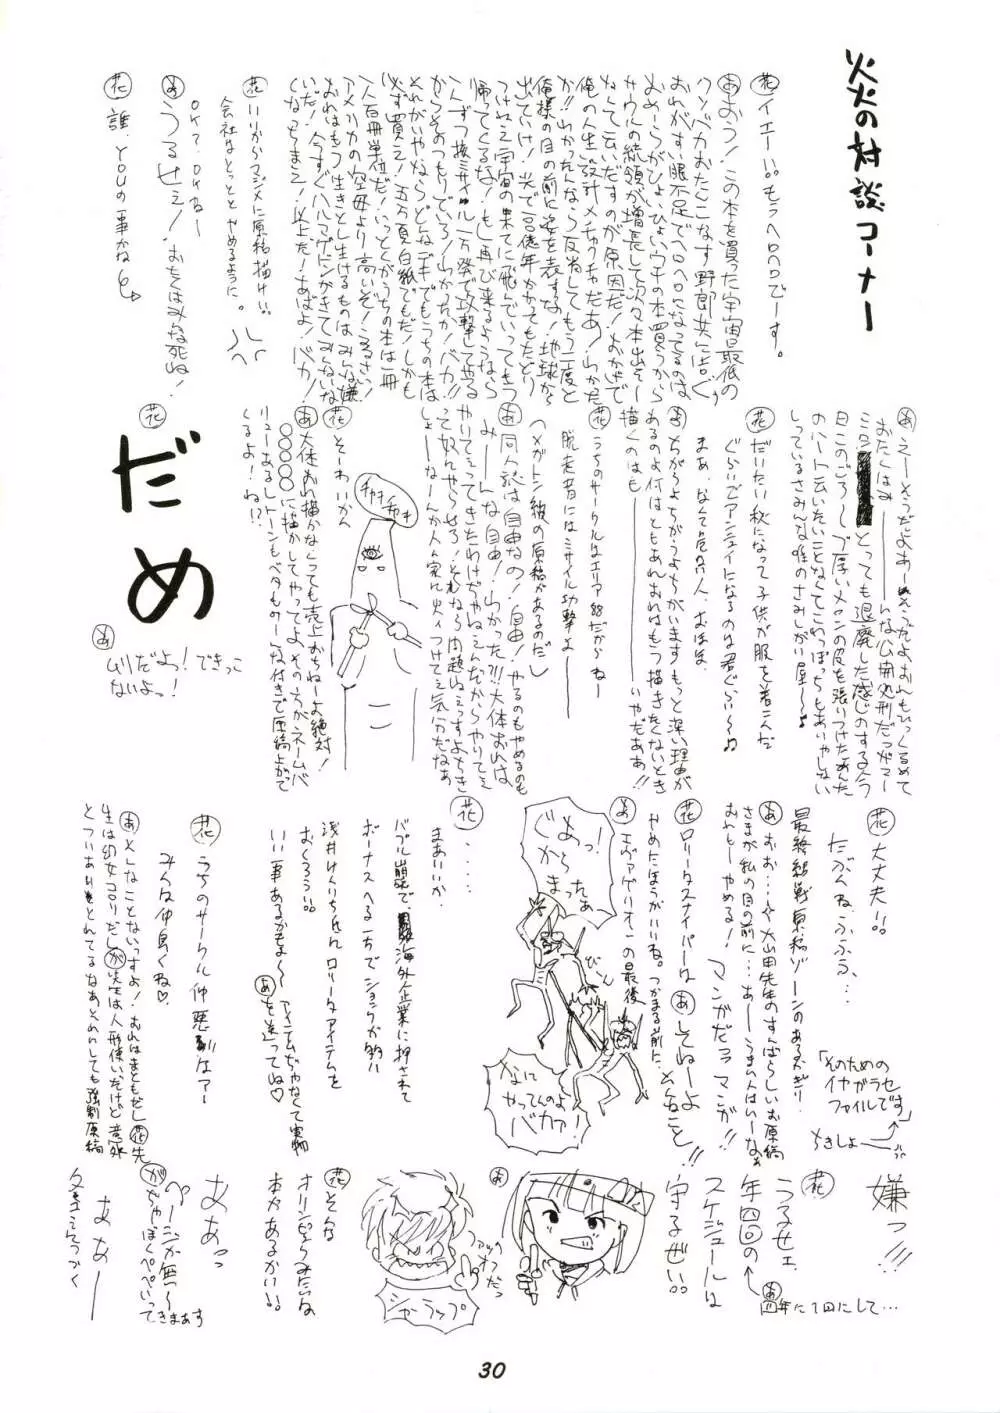 [KAORU SYSTEM (よろず) 乱描 絵画組織馨制御 (飛べ!イサミi、ナースエンジェルりりかSOS、ギャラクシーファイト) 30ページ